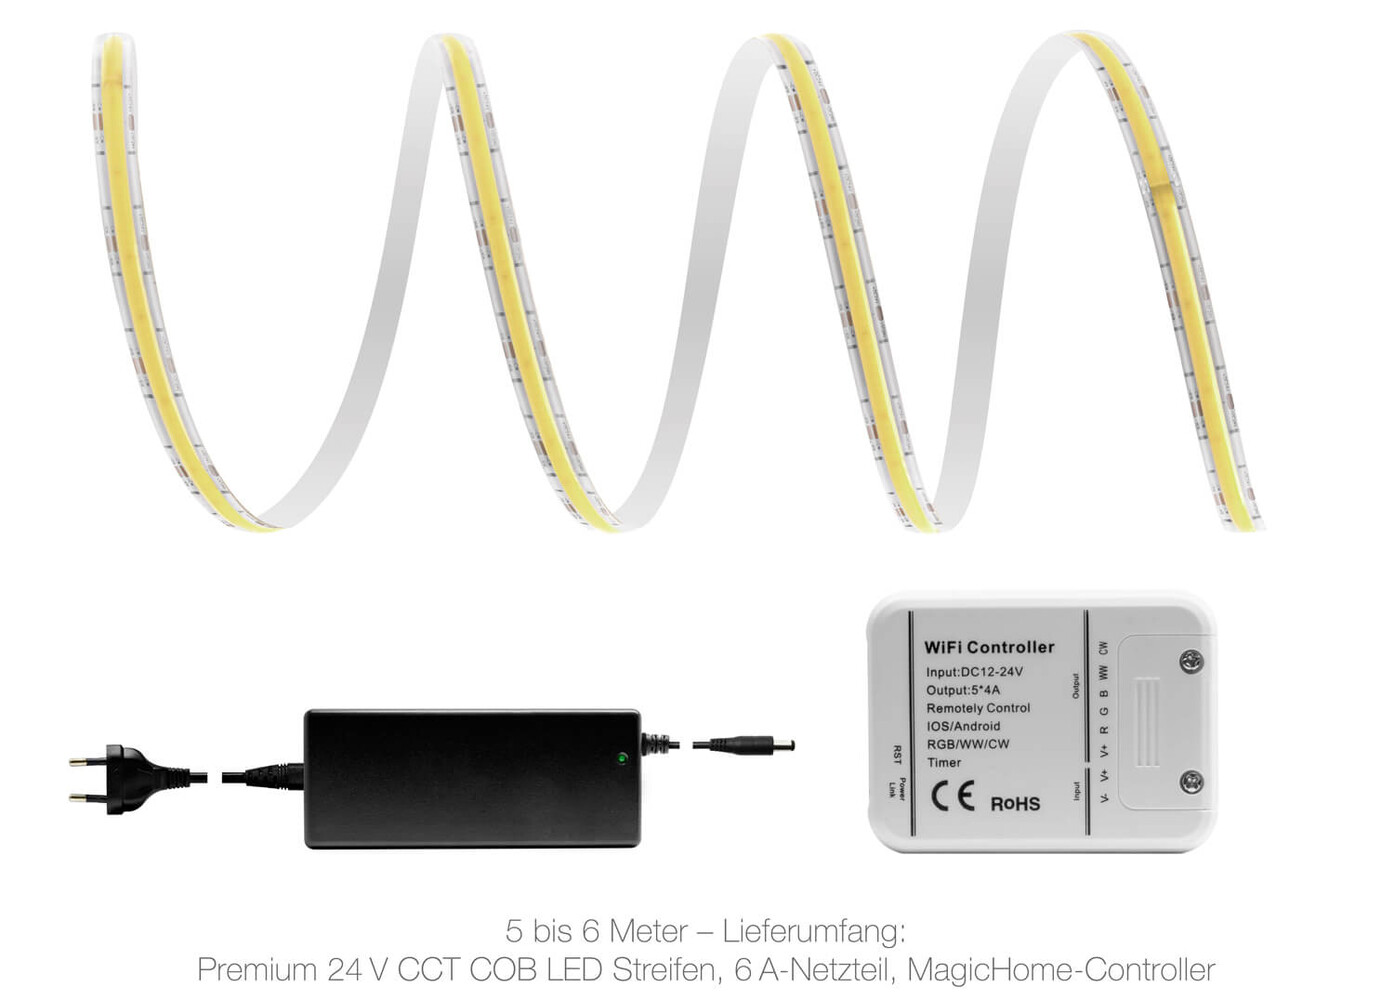 Hochwertiger Premium LED Streifen von LED Universum mit WLAN Set und Magic Home